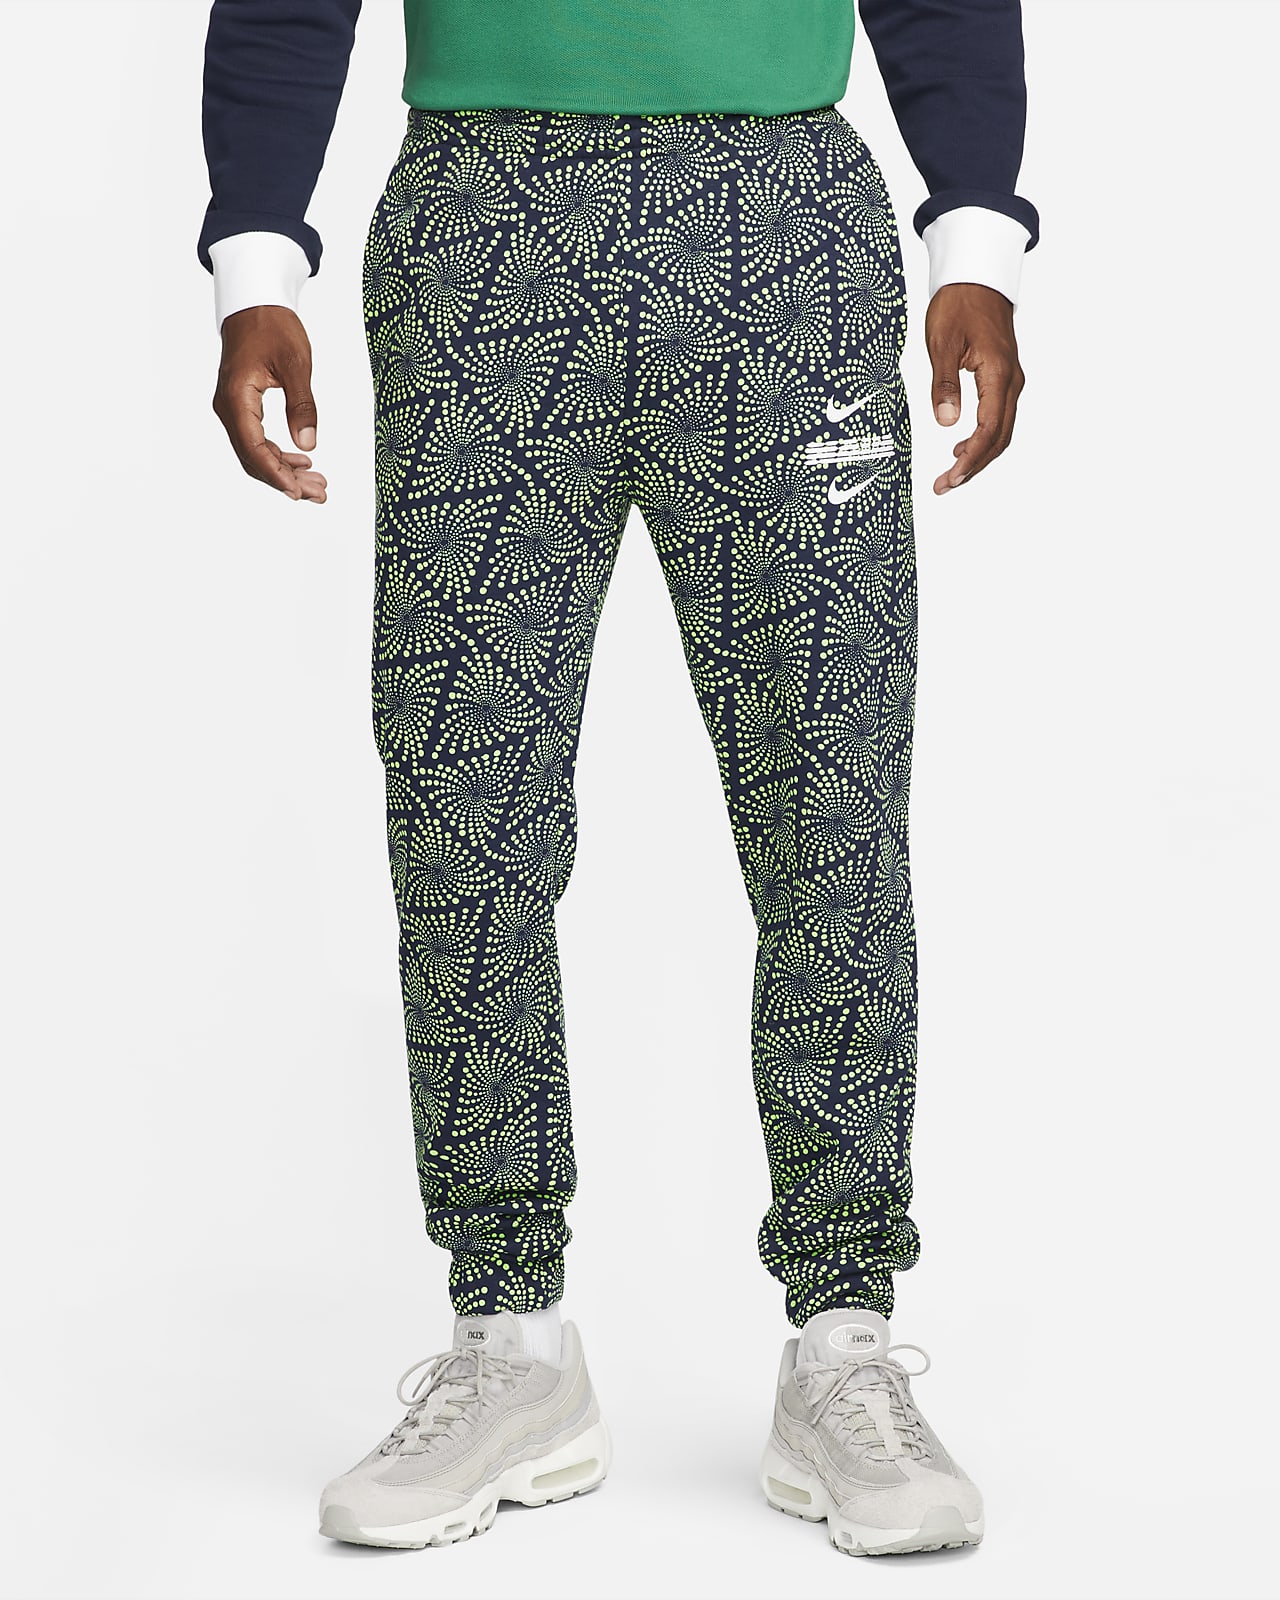 Lenen vanavond Beenmerg Nigeria Men's Fleece Soccer Pants. Nike.com